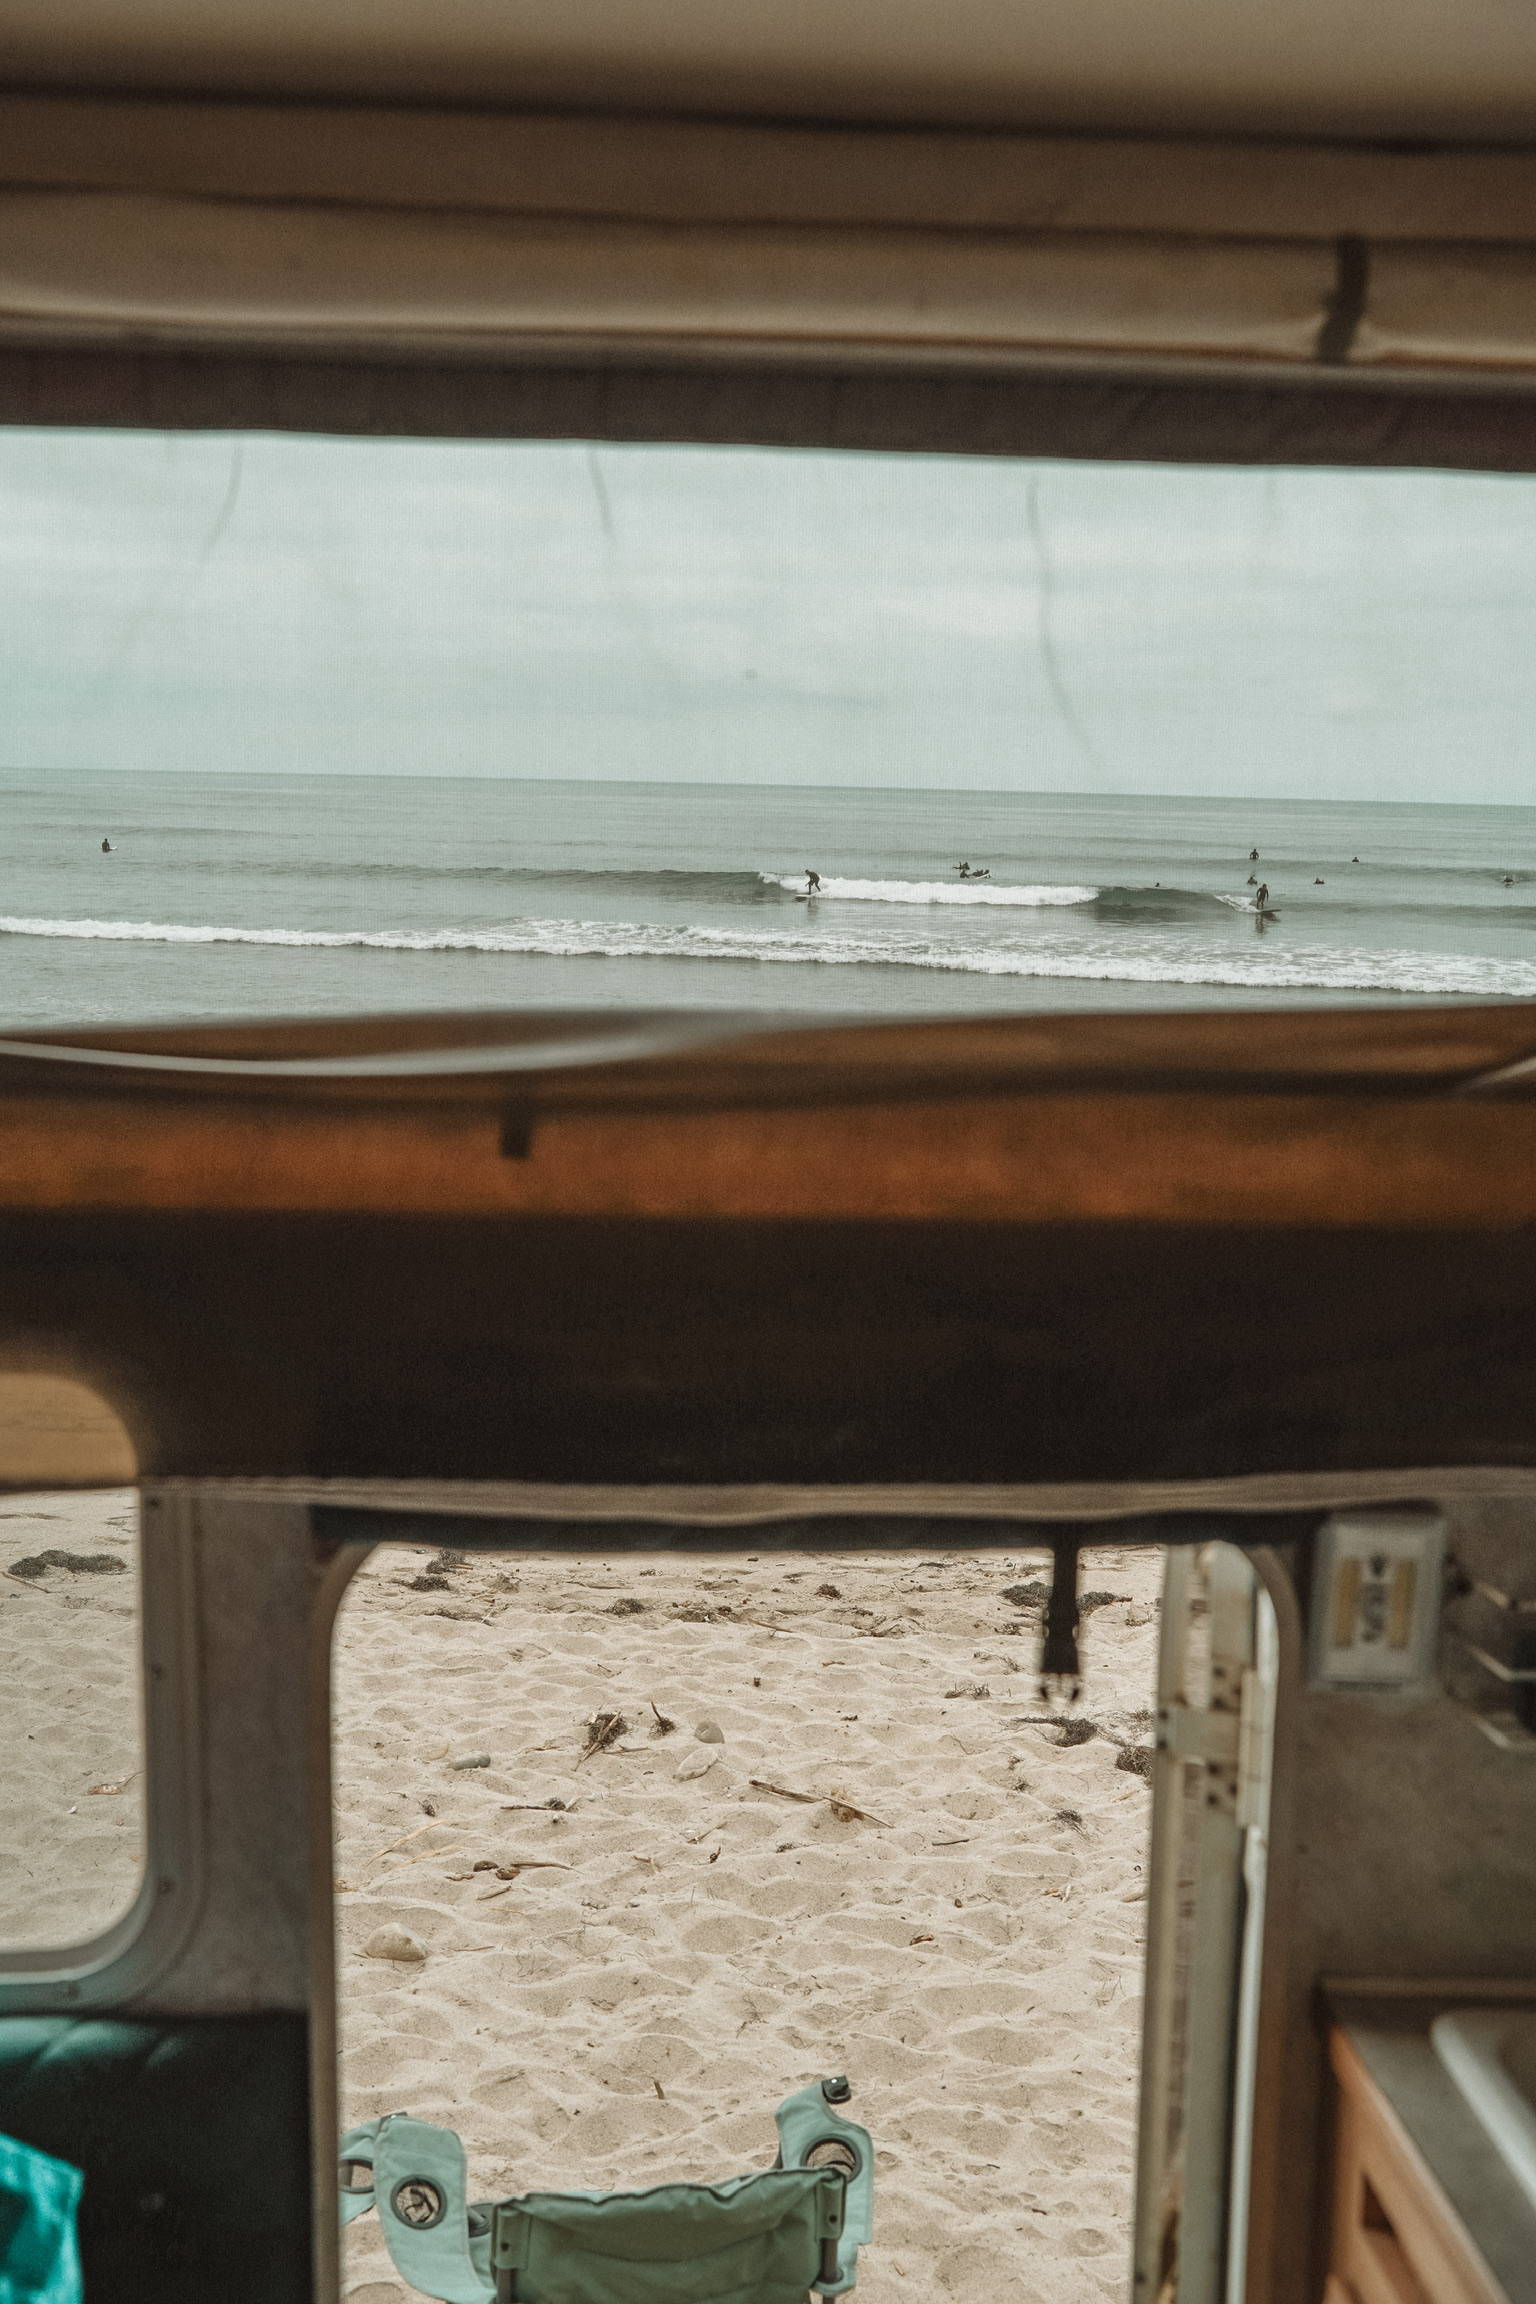 A california beach seen through the windows of a campervan